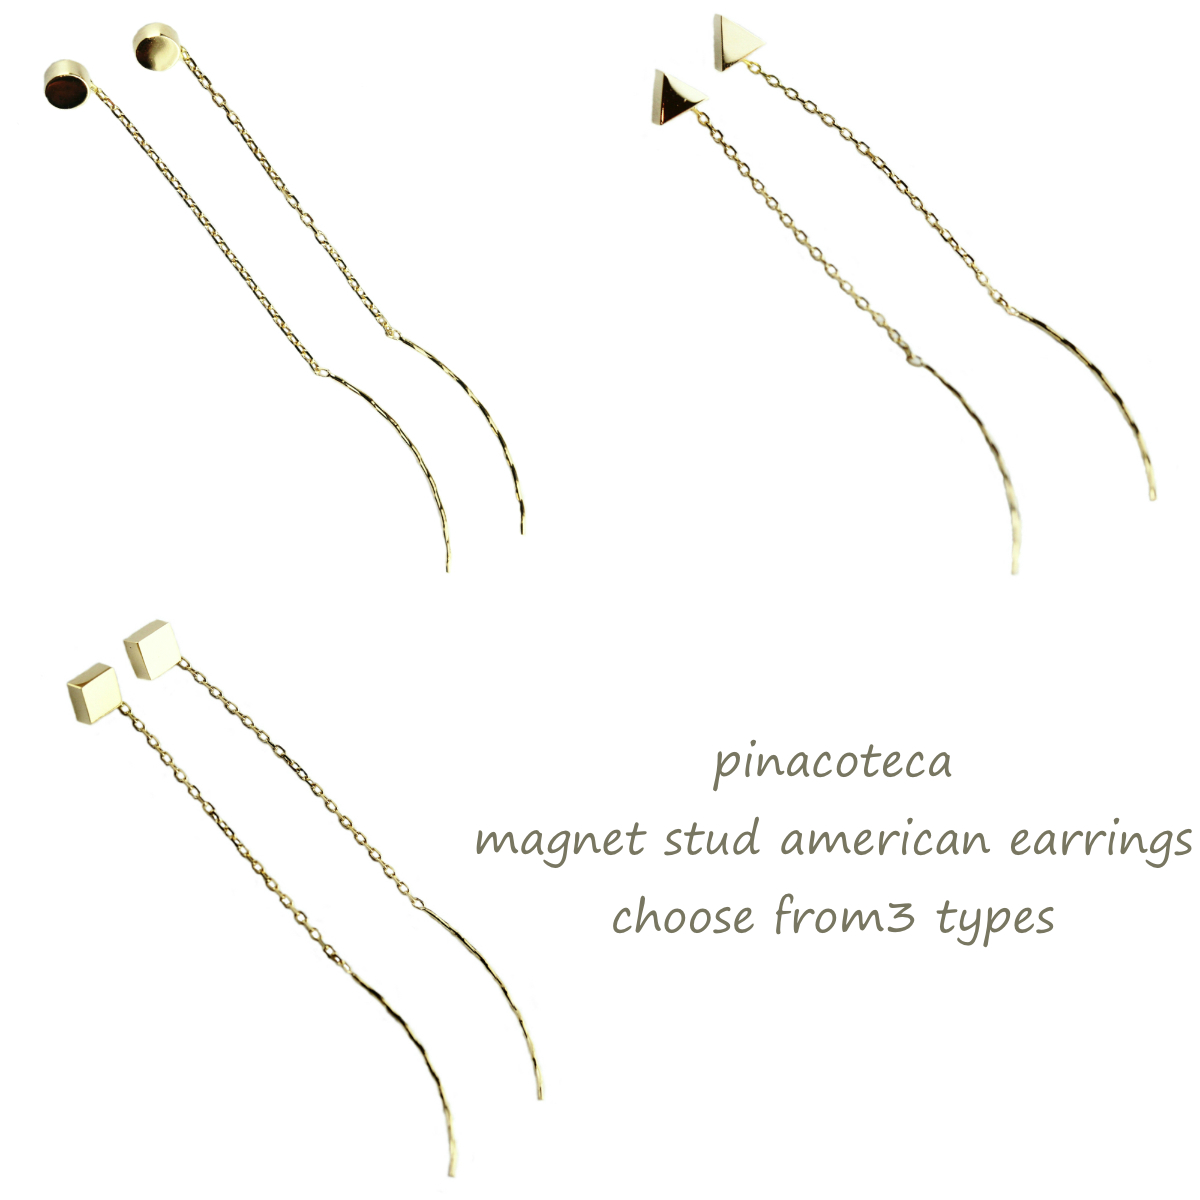 ピナコテーカ マグネット スタッド アメリカン ピアス 18金,pinacoteca Magnet Stud American Earrings K18